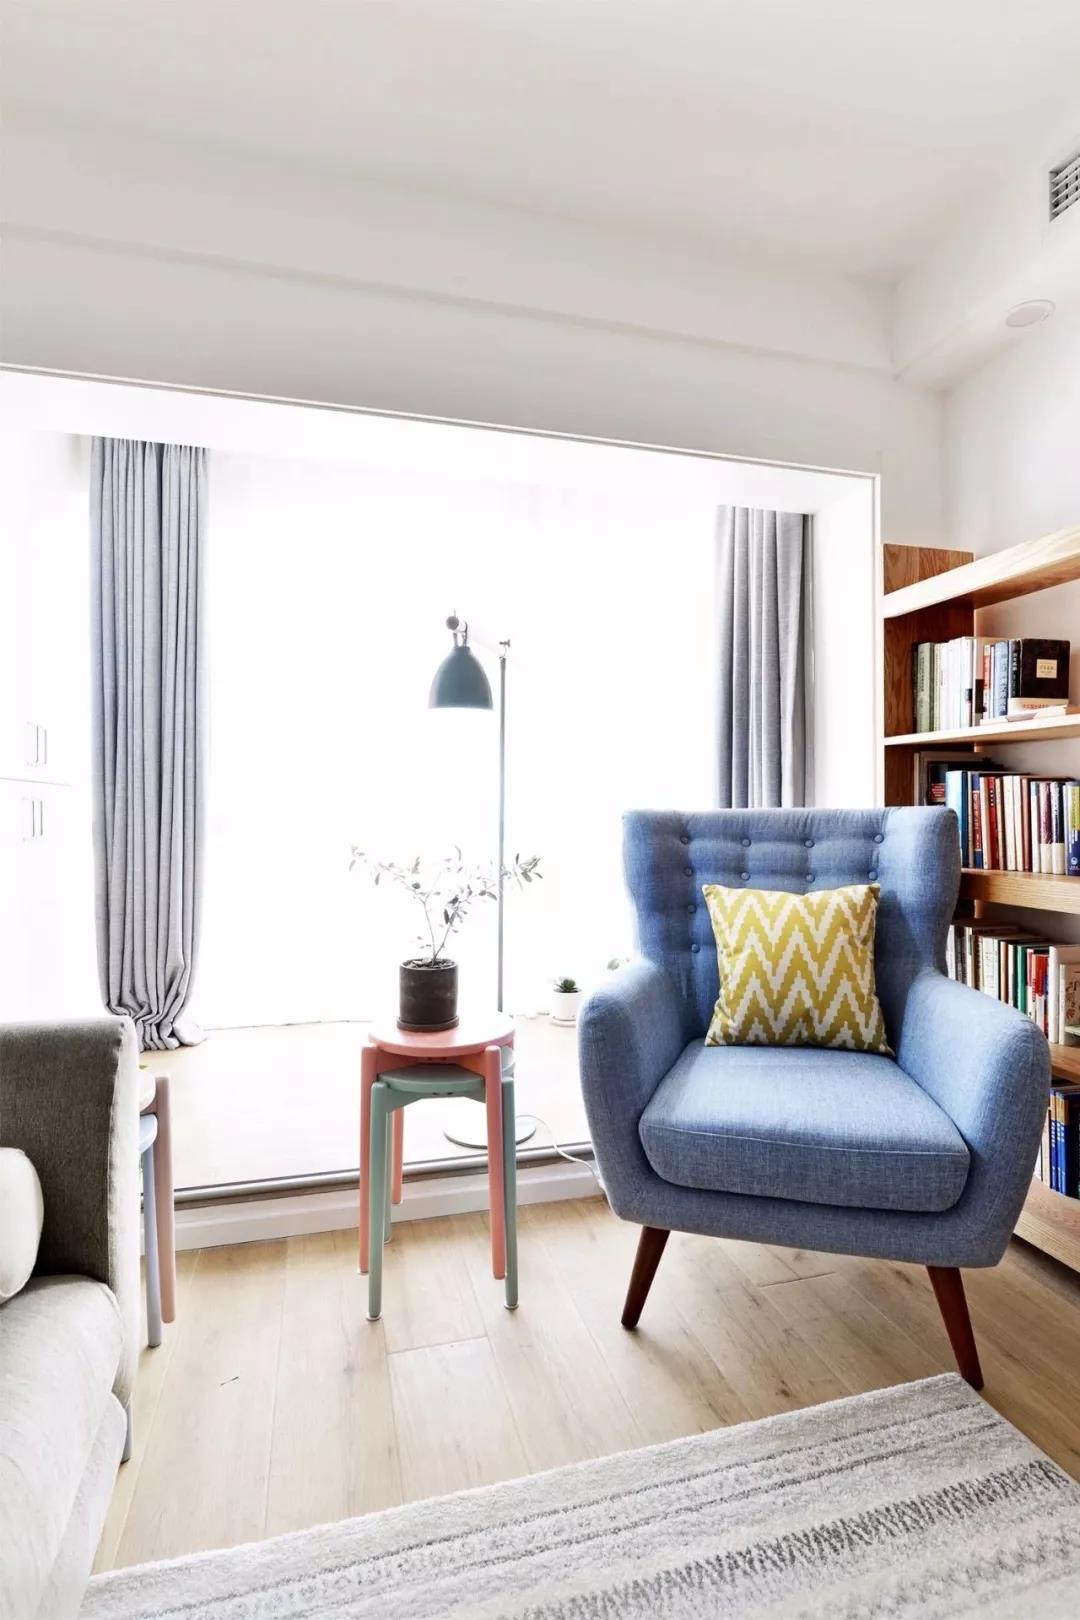 蓝色布艺沙发强调现代风格的时尚感，线条流畅，配色鲜明，成为休闲一角。